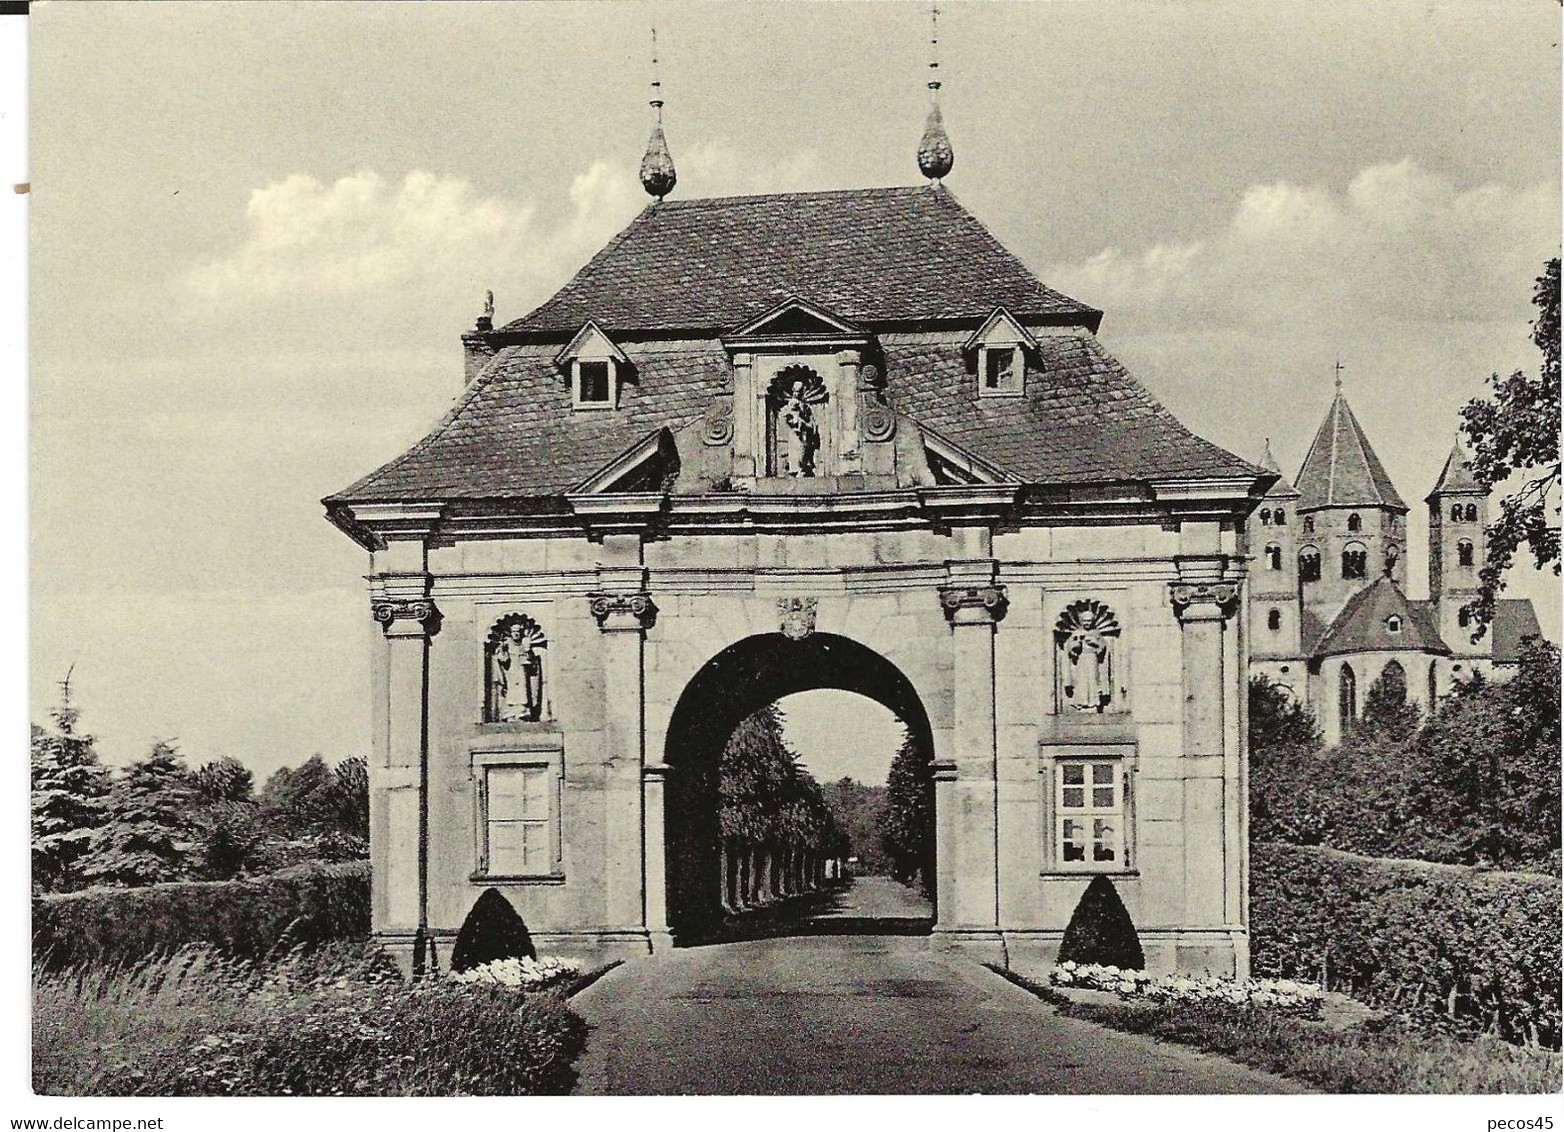 Monastère De KNECHTSREDEN (Prémontrés) Près De DORMAGEN (Rhénanie Du Nord / Westphalie) : La Tour-porche. Années 50 (?) - Dormagen